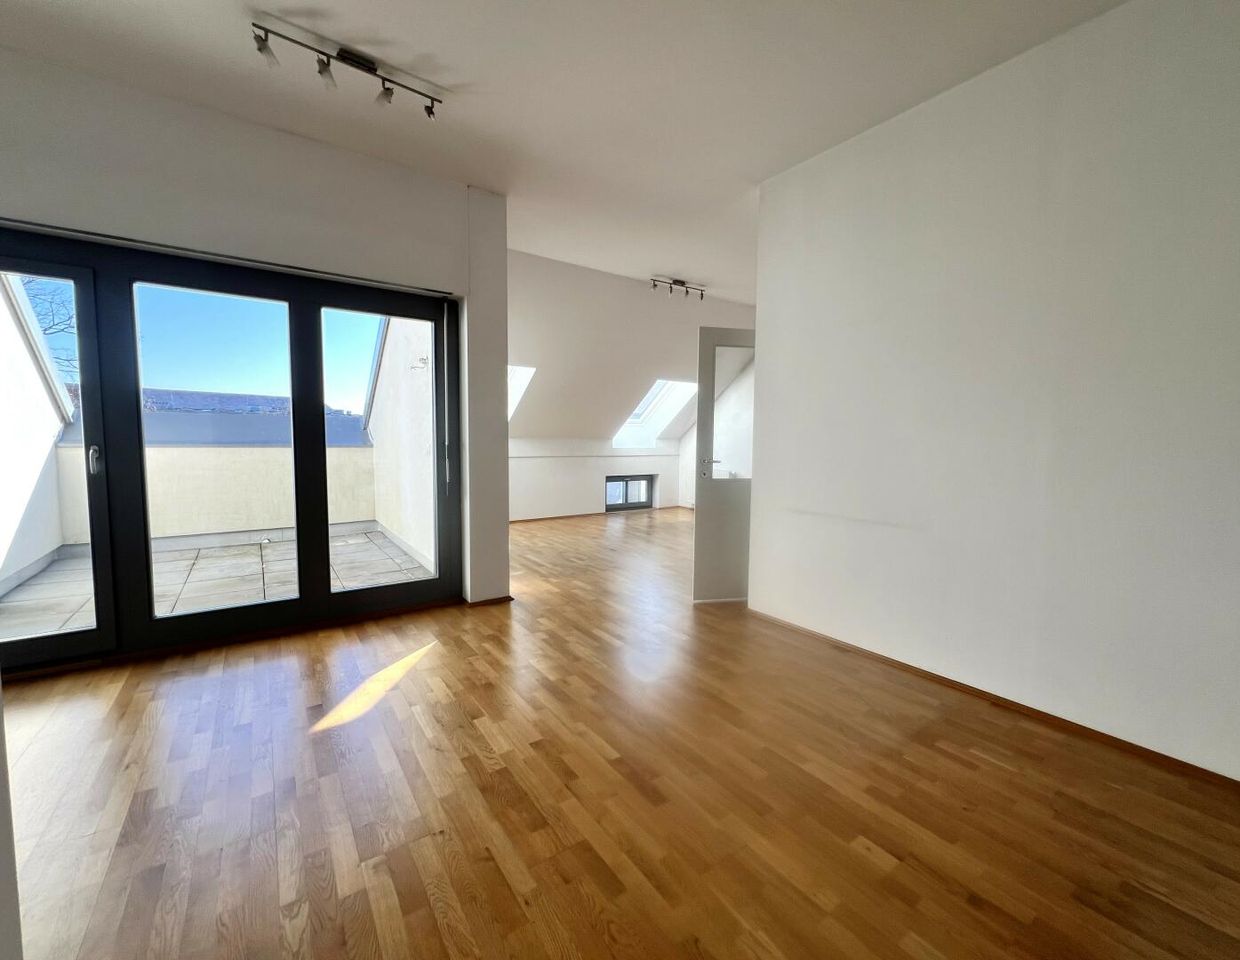 Exklusive Dachgeschoss-Wohnung in Top-Lage mit Terrasse und Schlossbergblick! ++Videorundgang++